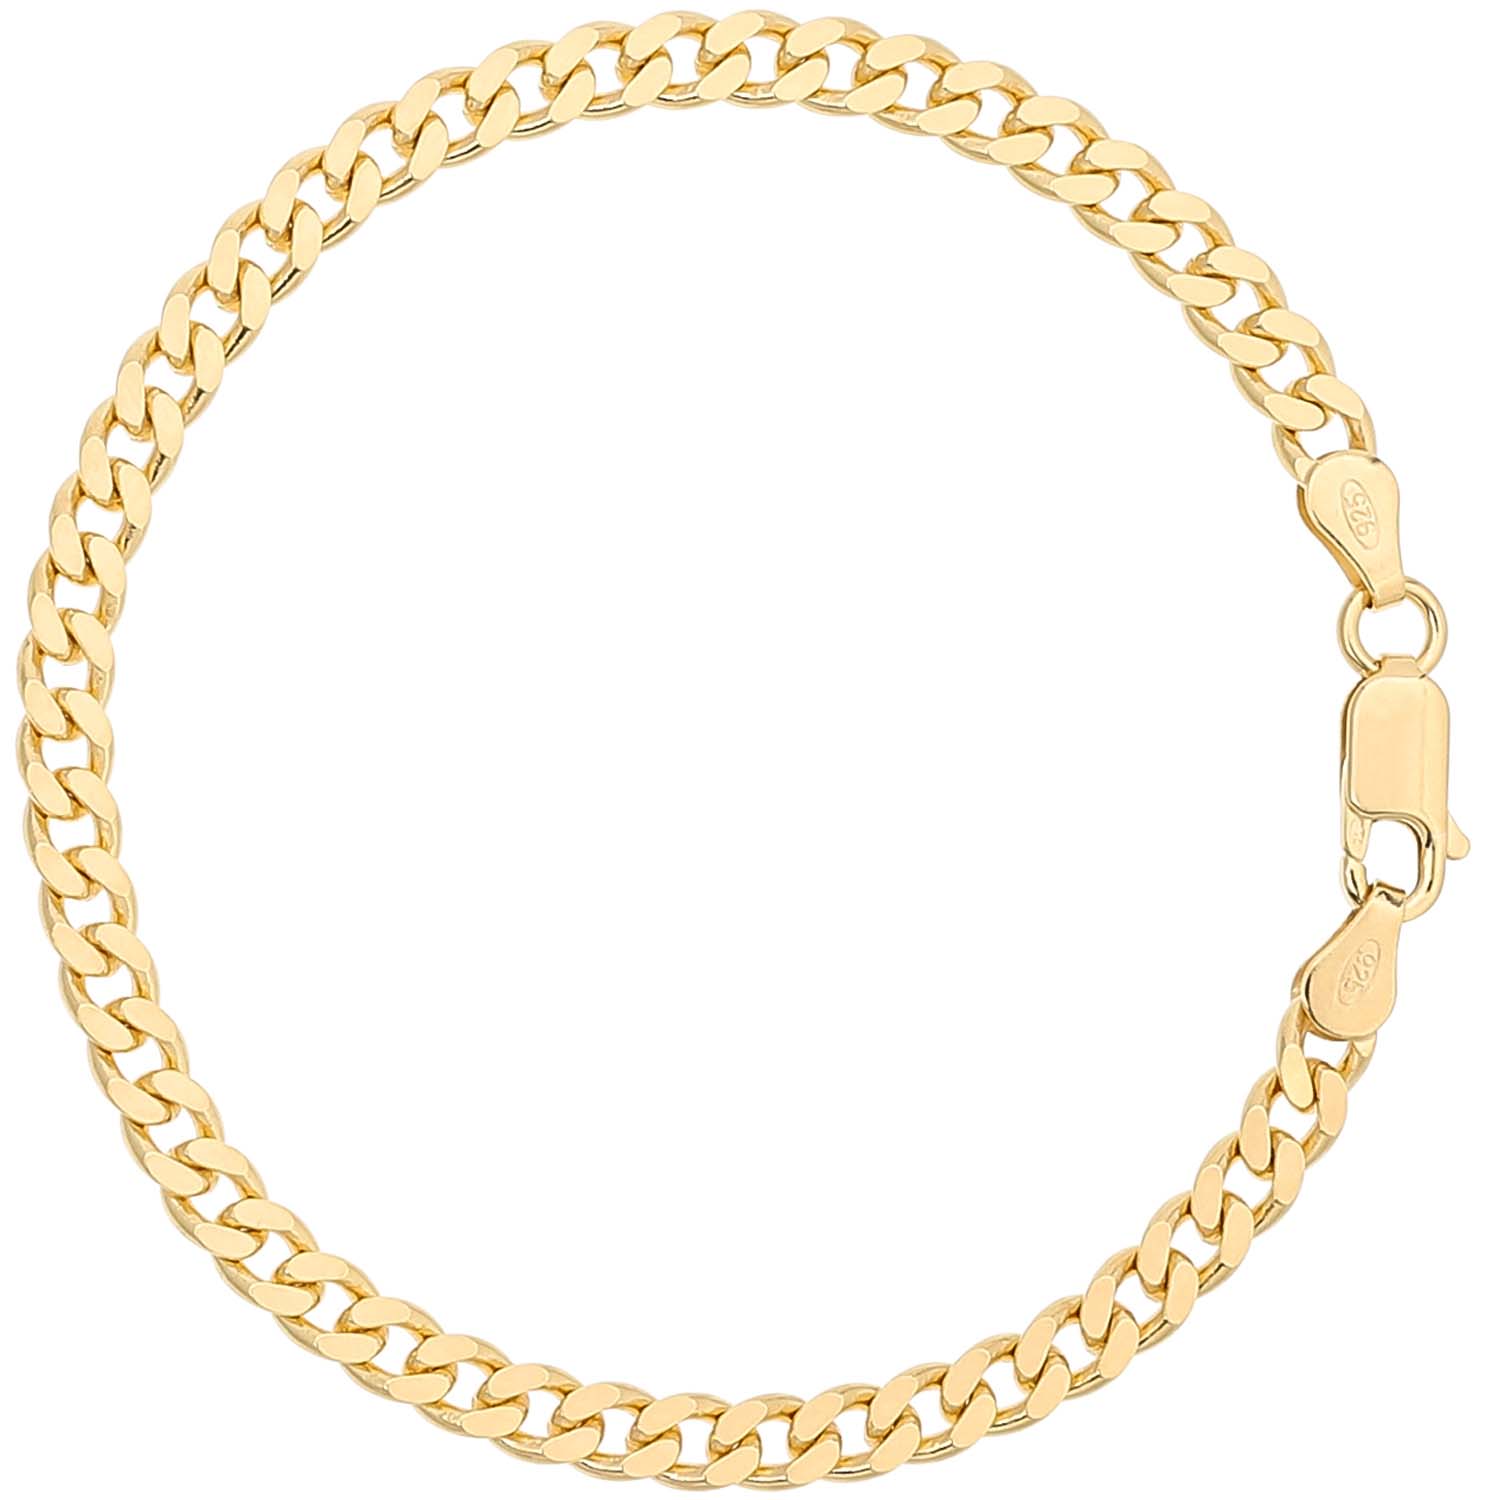 Bracelet - Classy Gold